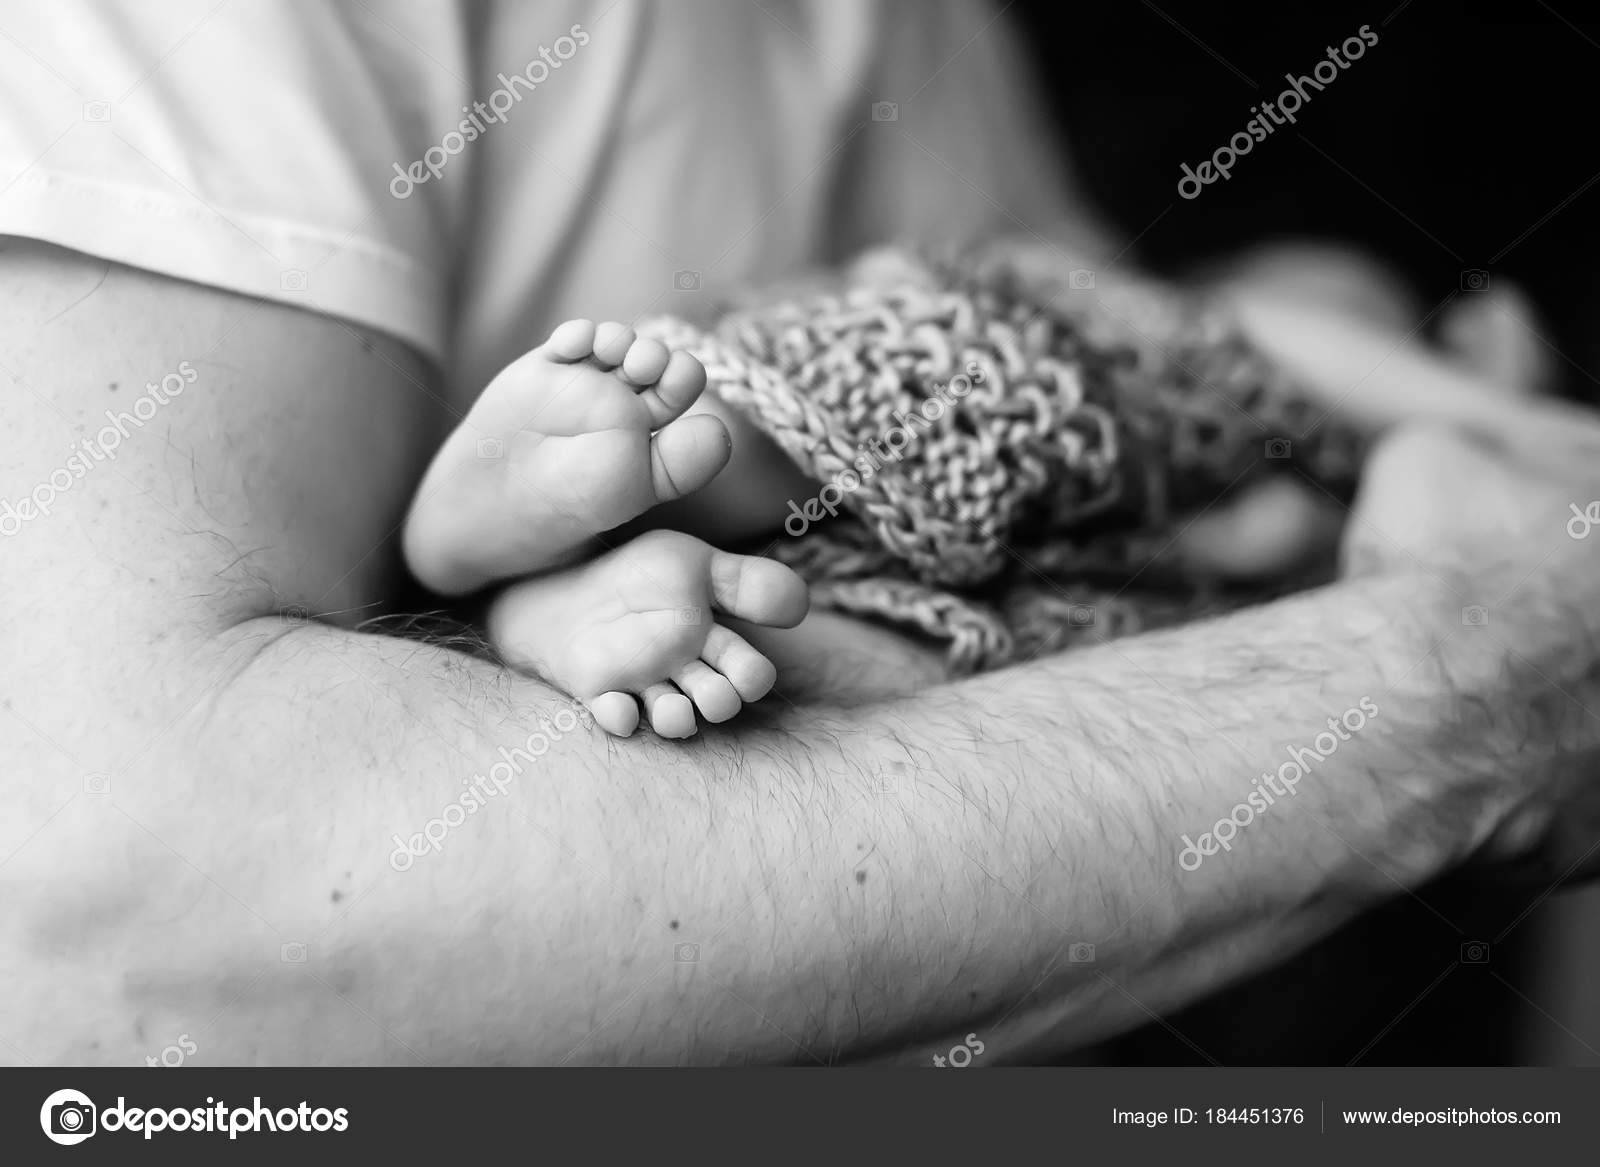 voeten van de baby handen van de vader. Zwart-wit Baby's in ⬇ Stockfoto, rechtenvrije foto door © liudmila.fadzeyeva.gmail.com #184451376